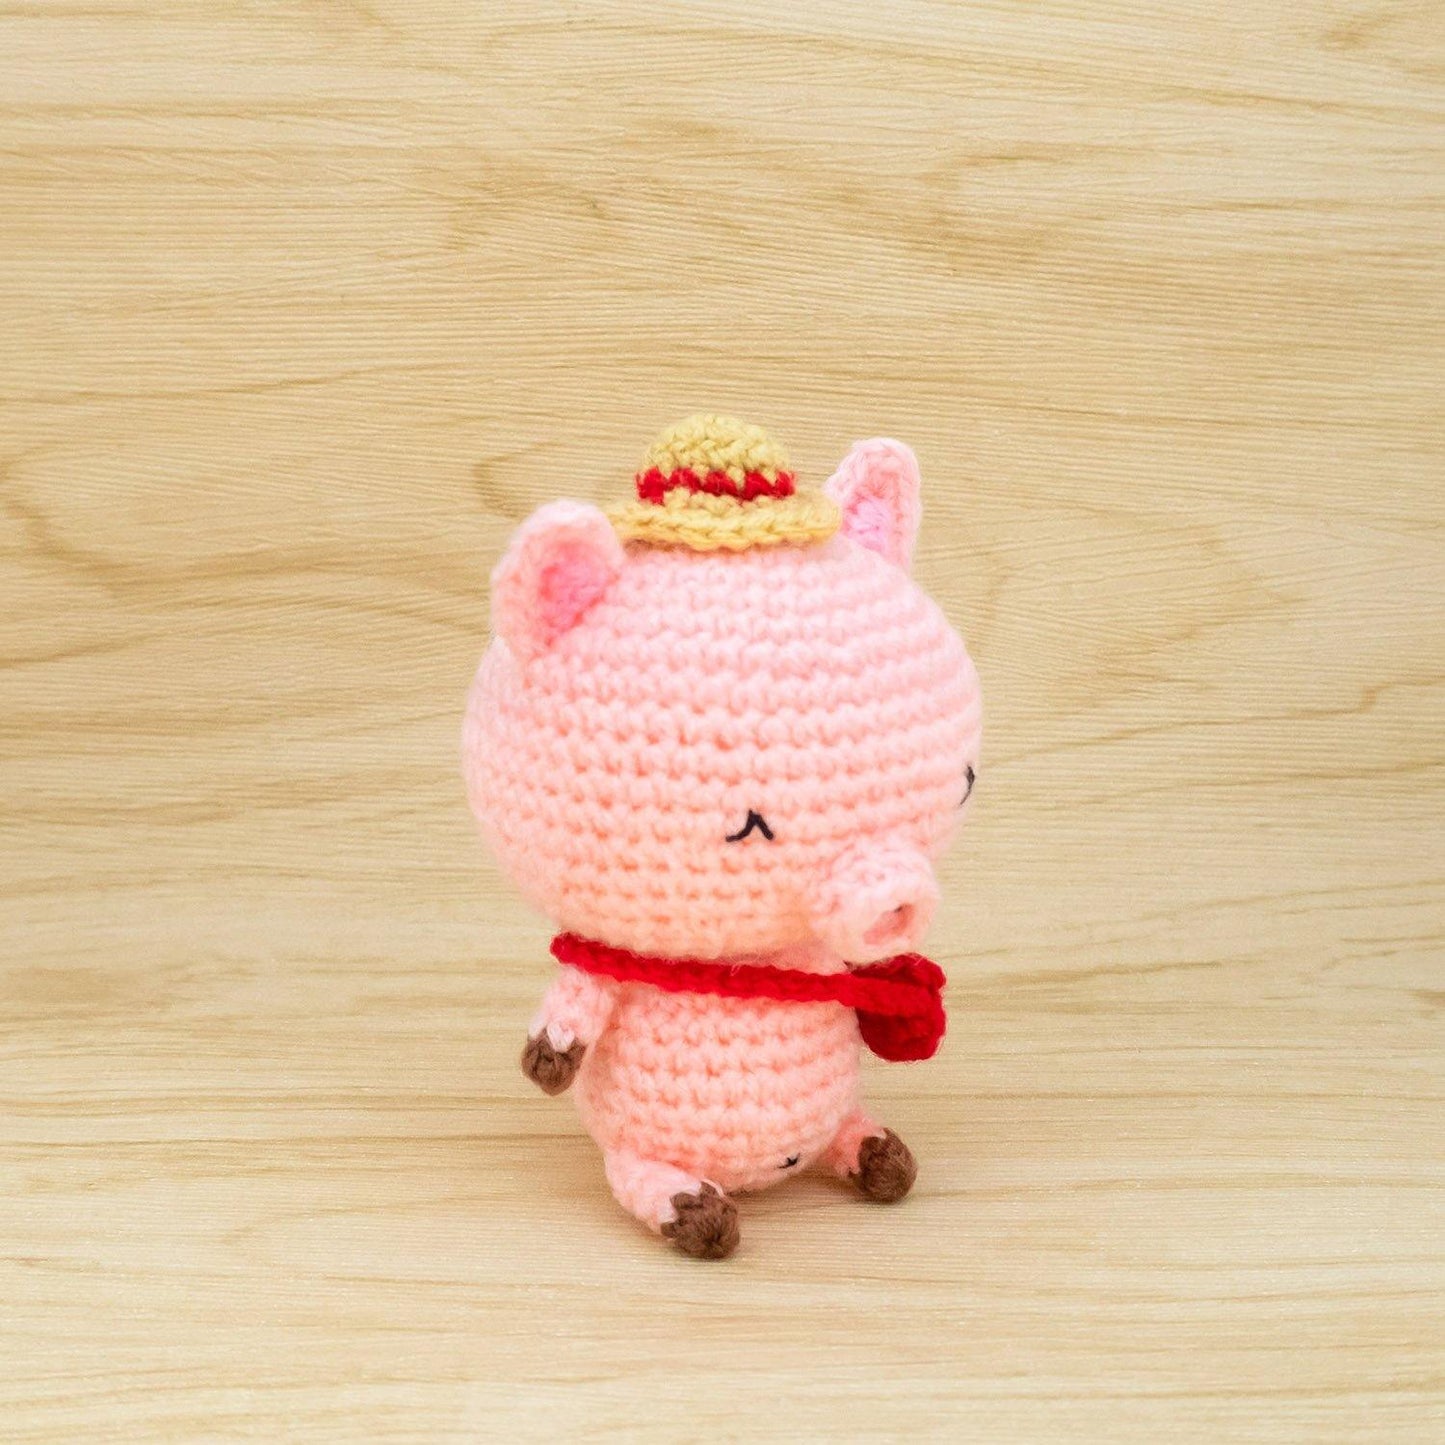 Crochet Pig Amigurumi Pattern for DIY